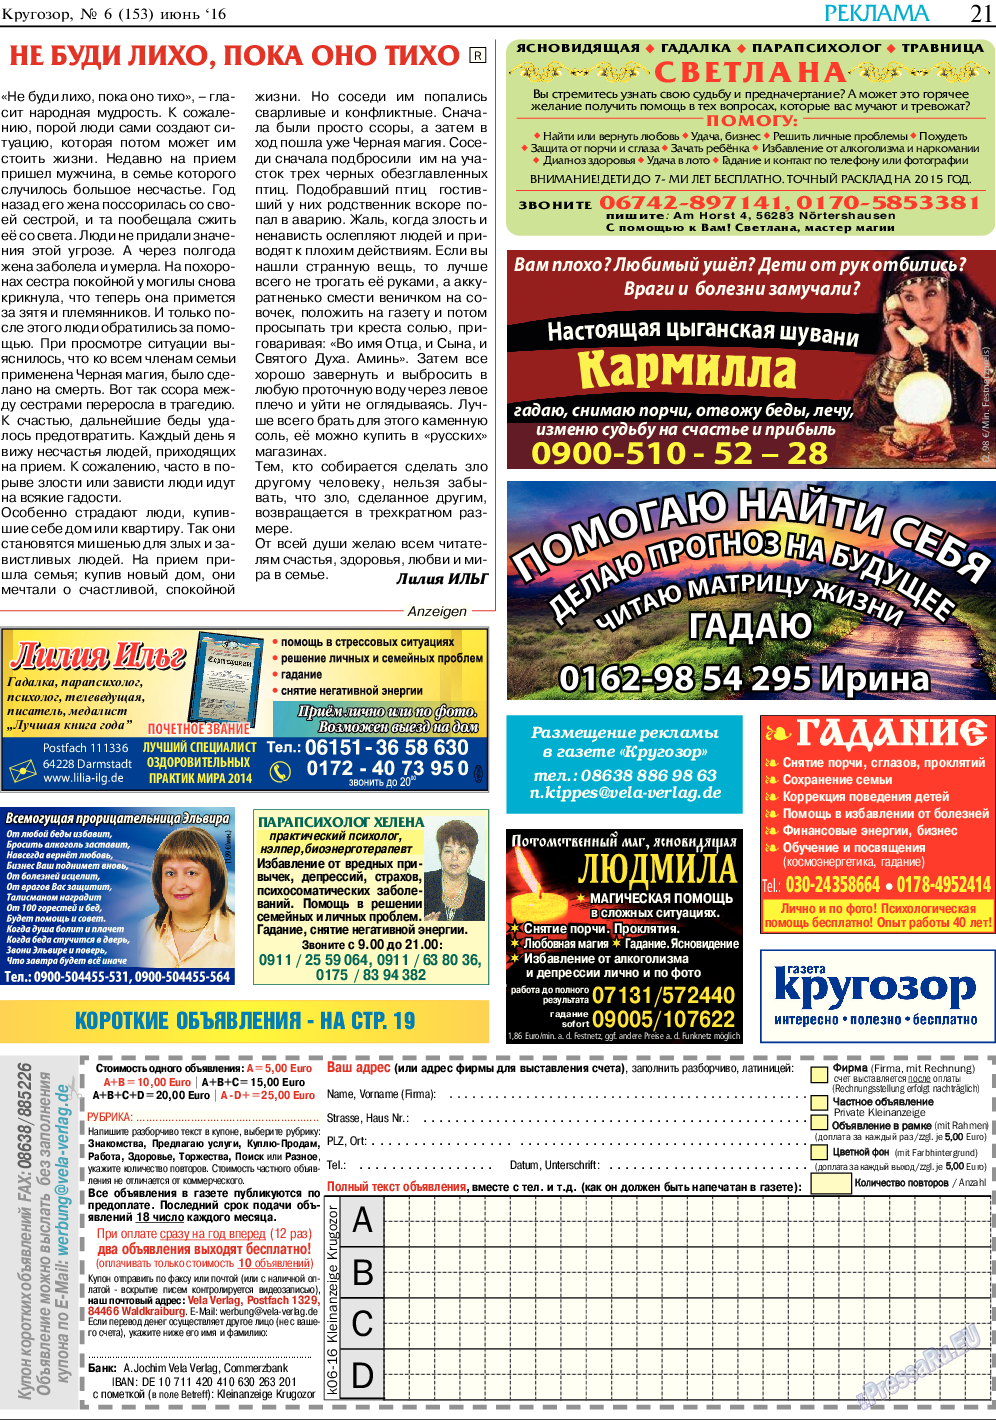 Кругозор, газета. 2016 №6 стр.21